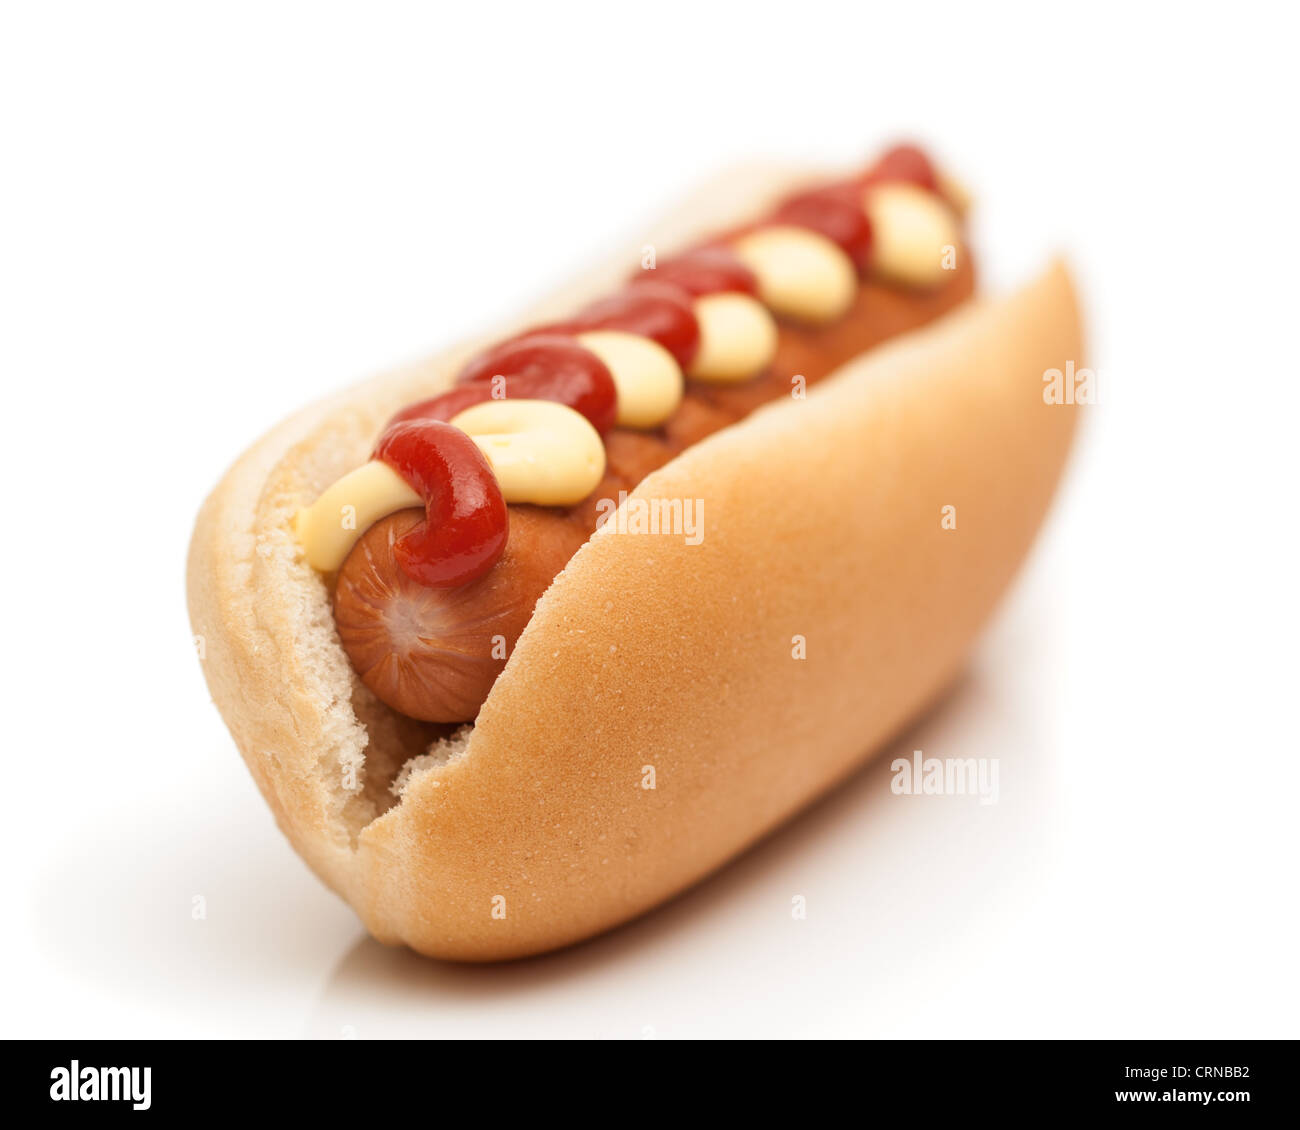 Hot Dog salchichas con mostaza y ketchup sobre fondo blanco - profundidad de campo Foto de stock